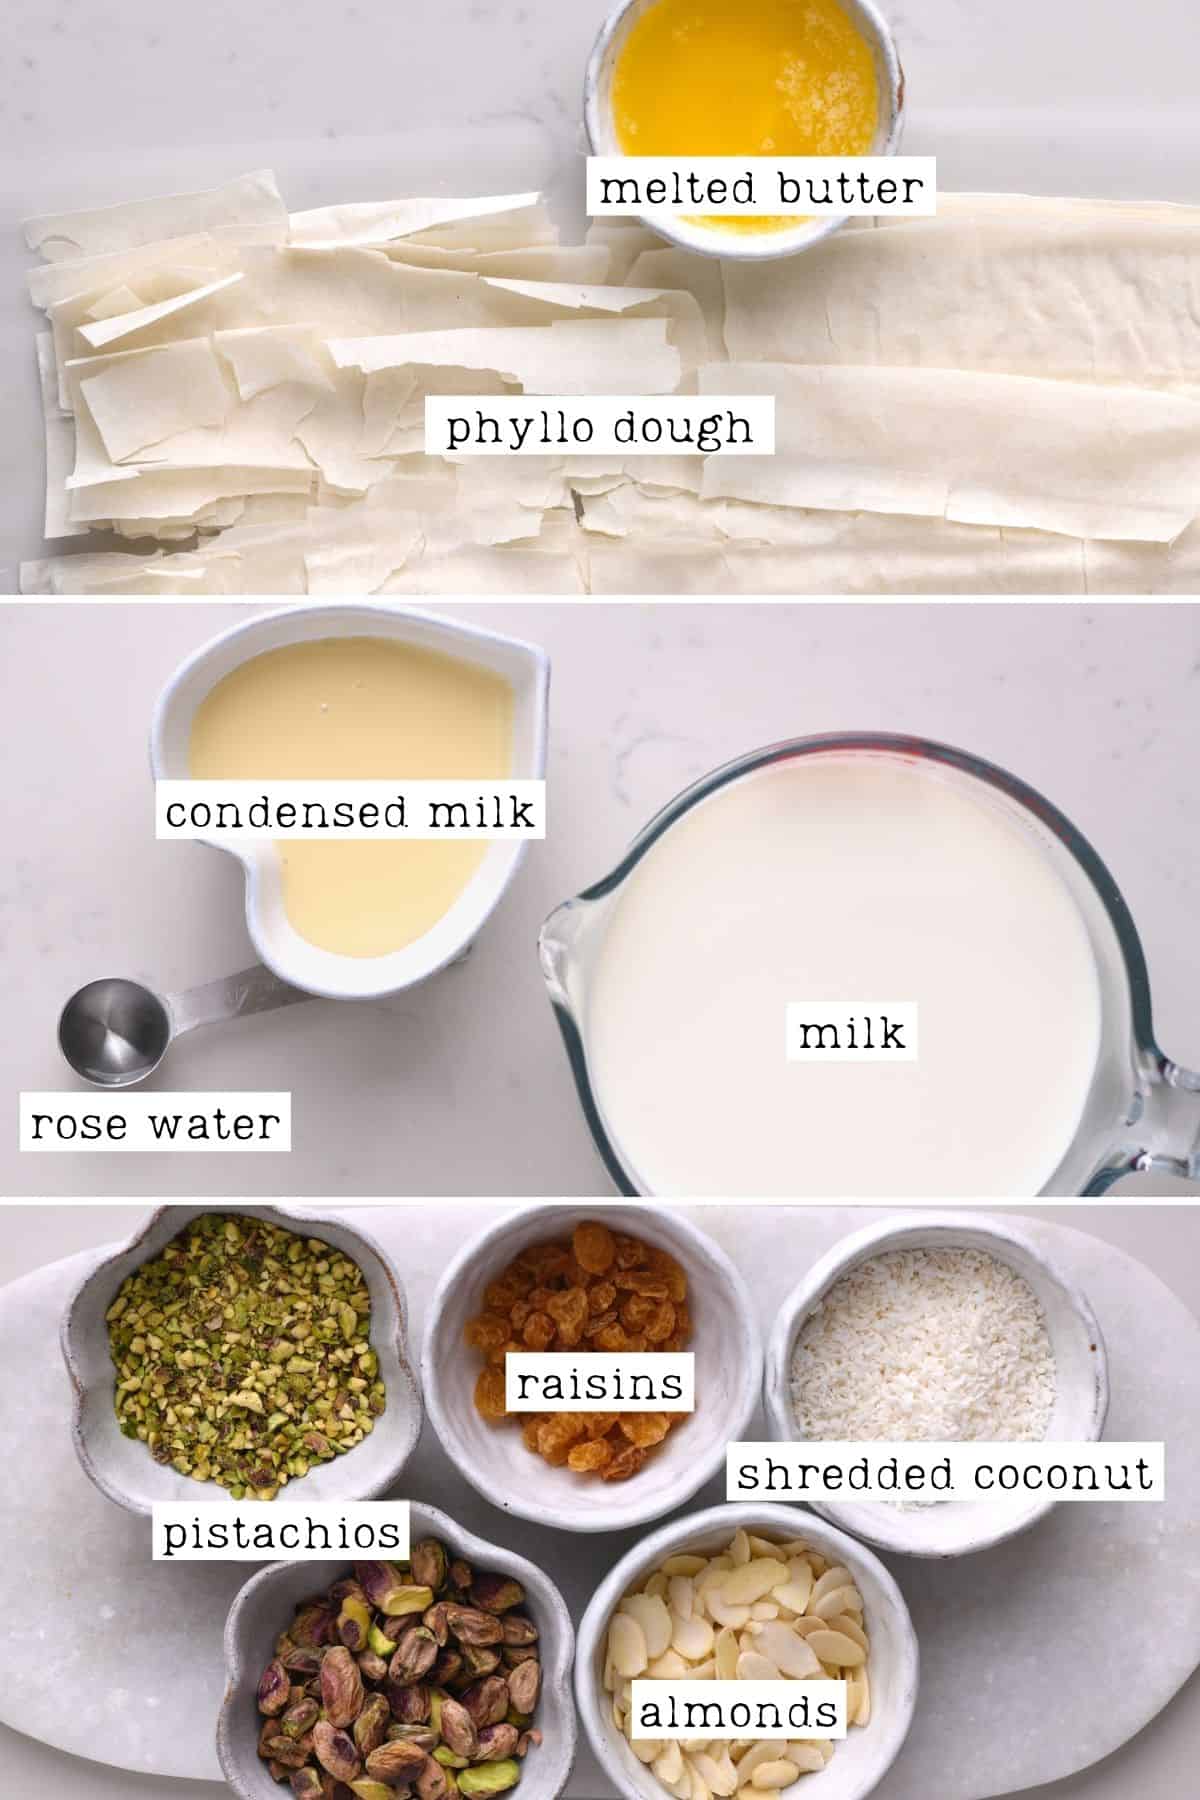 Ingredients for om ali